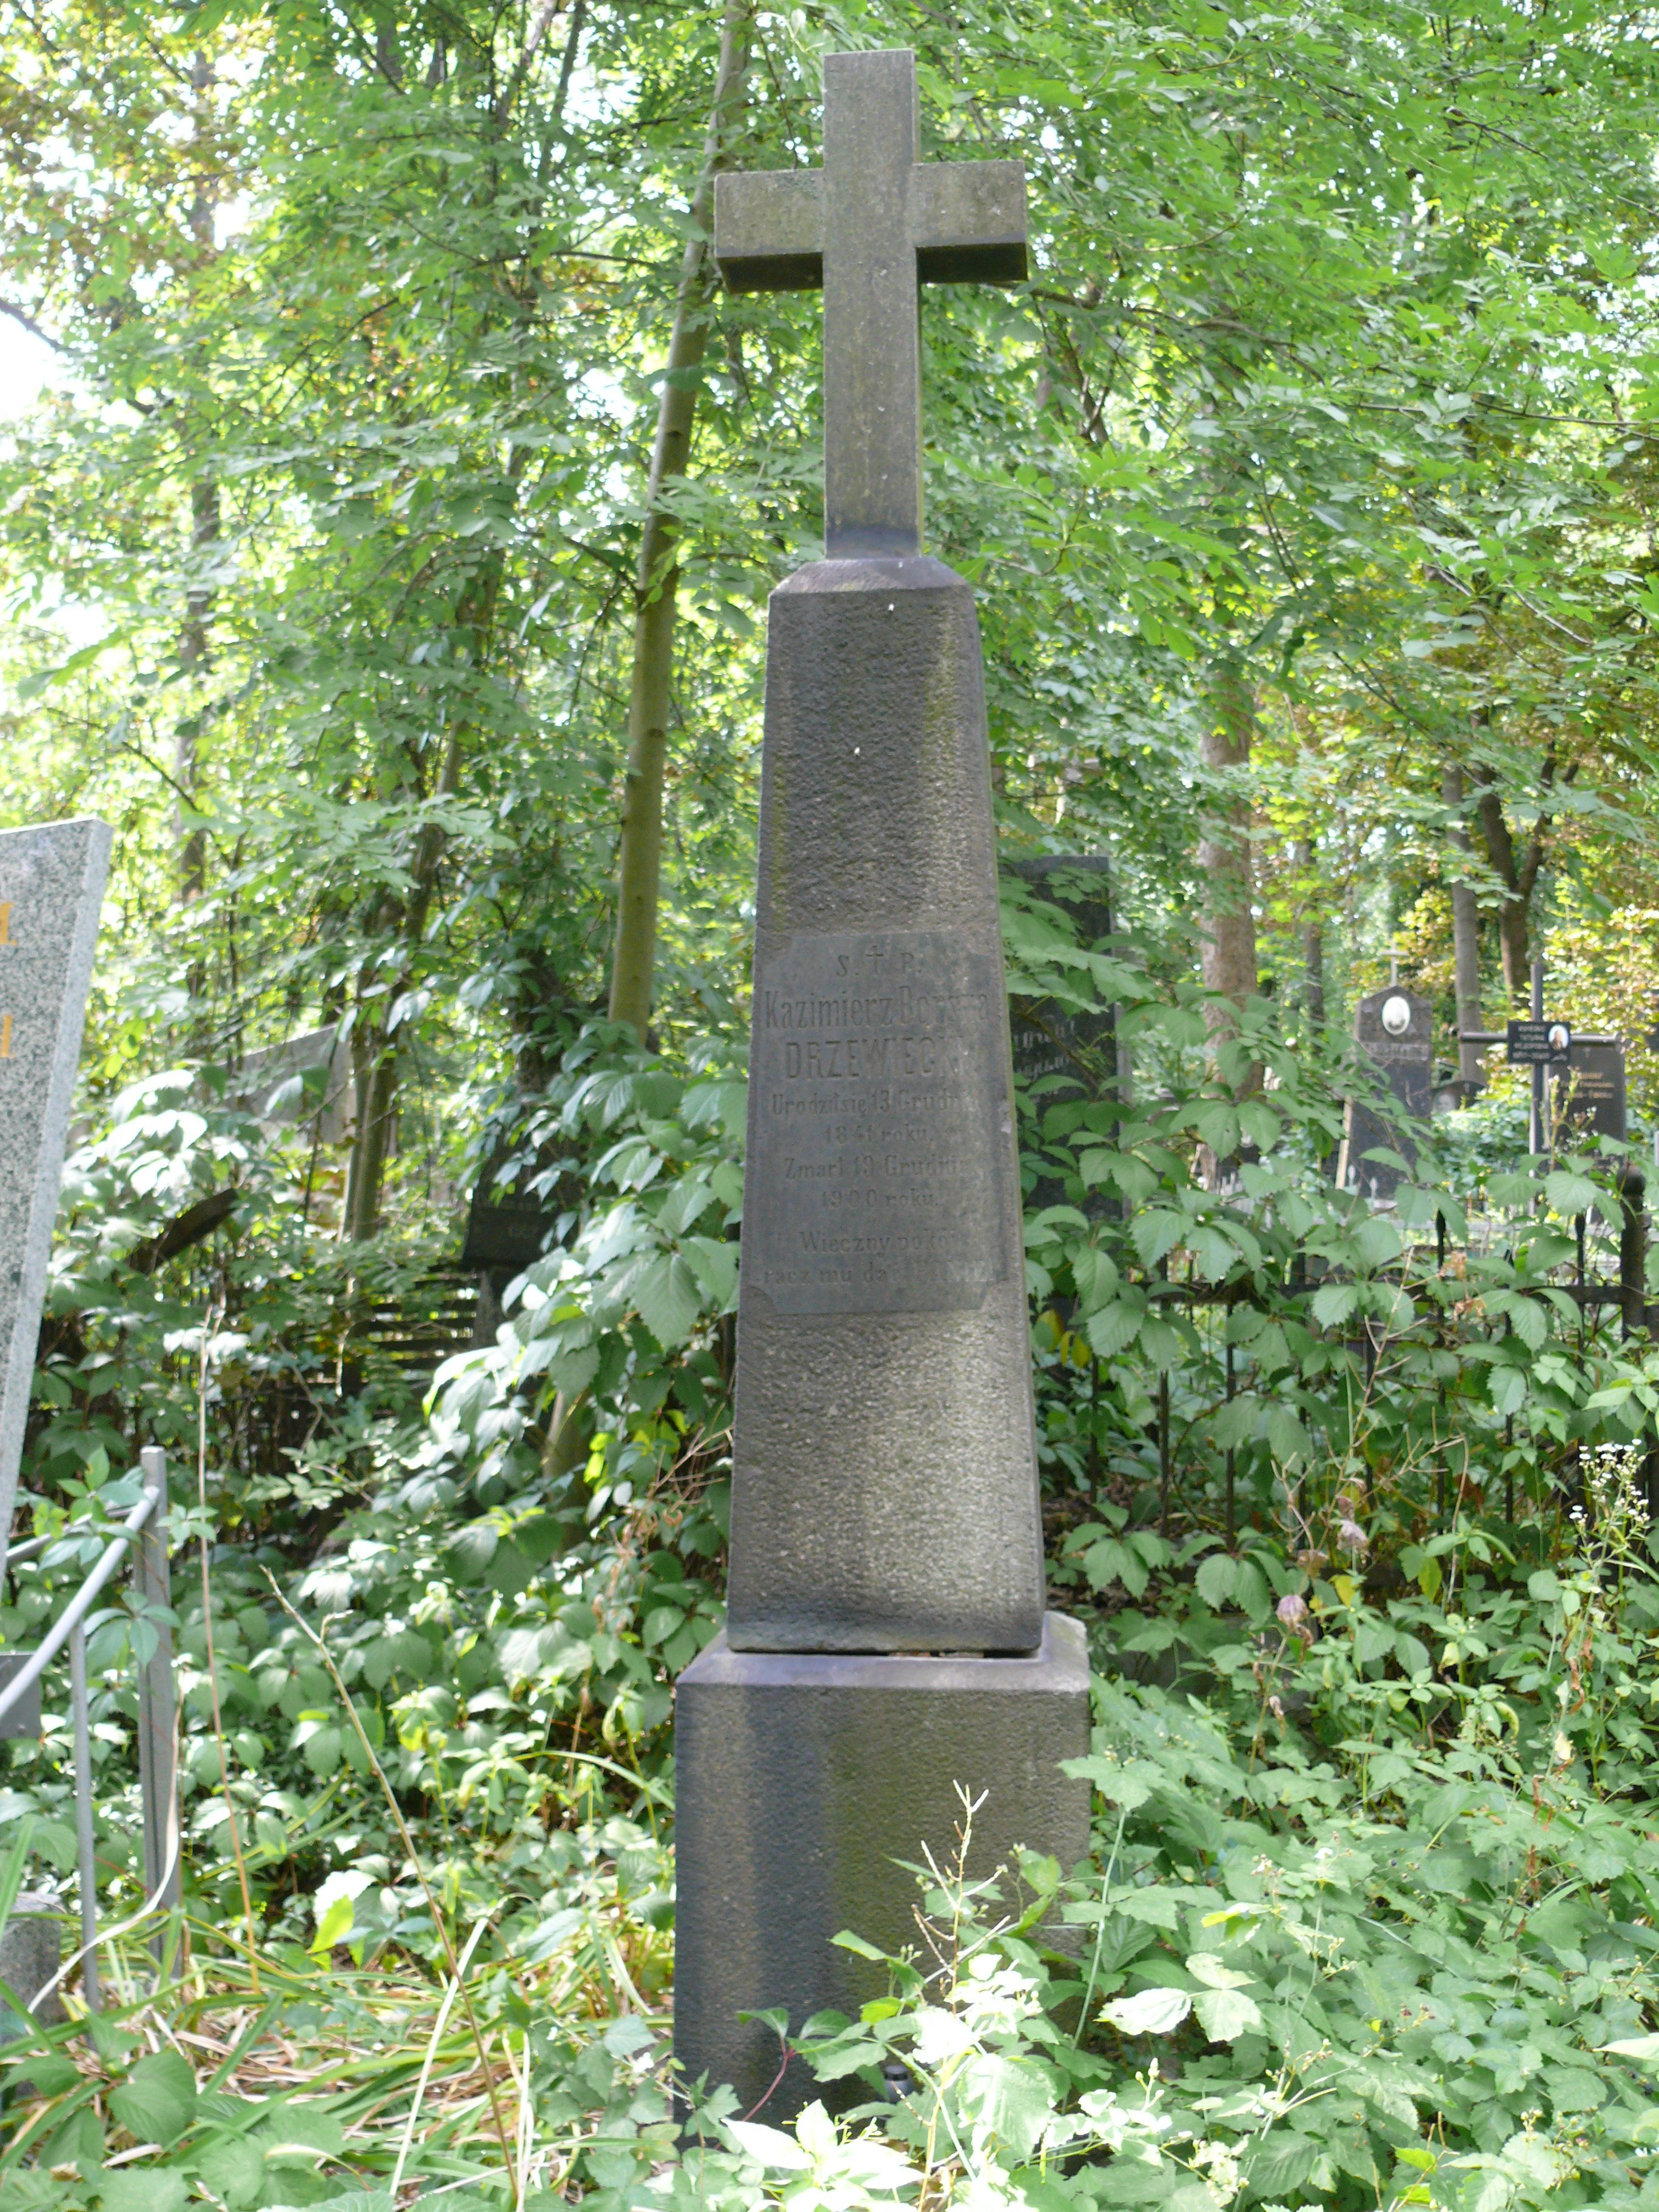 Photo montrant Tombstone of Kazimierz Drzewiecki